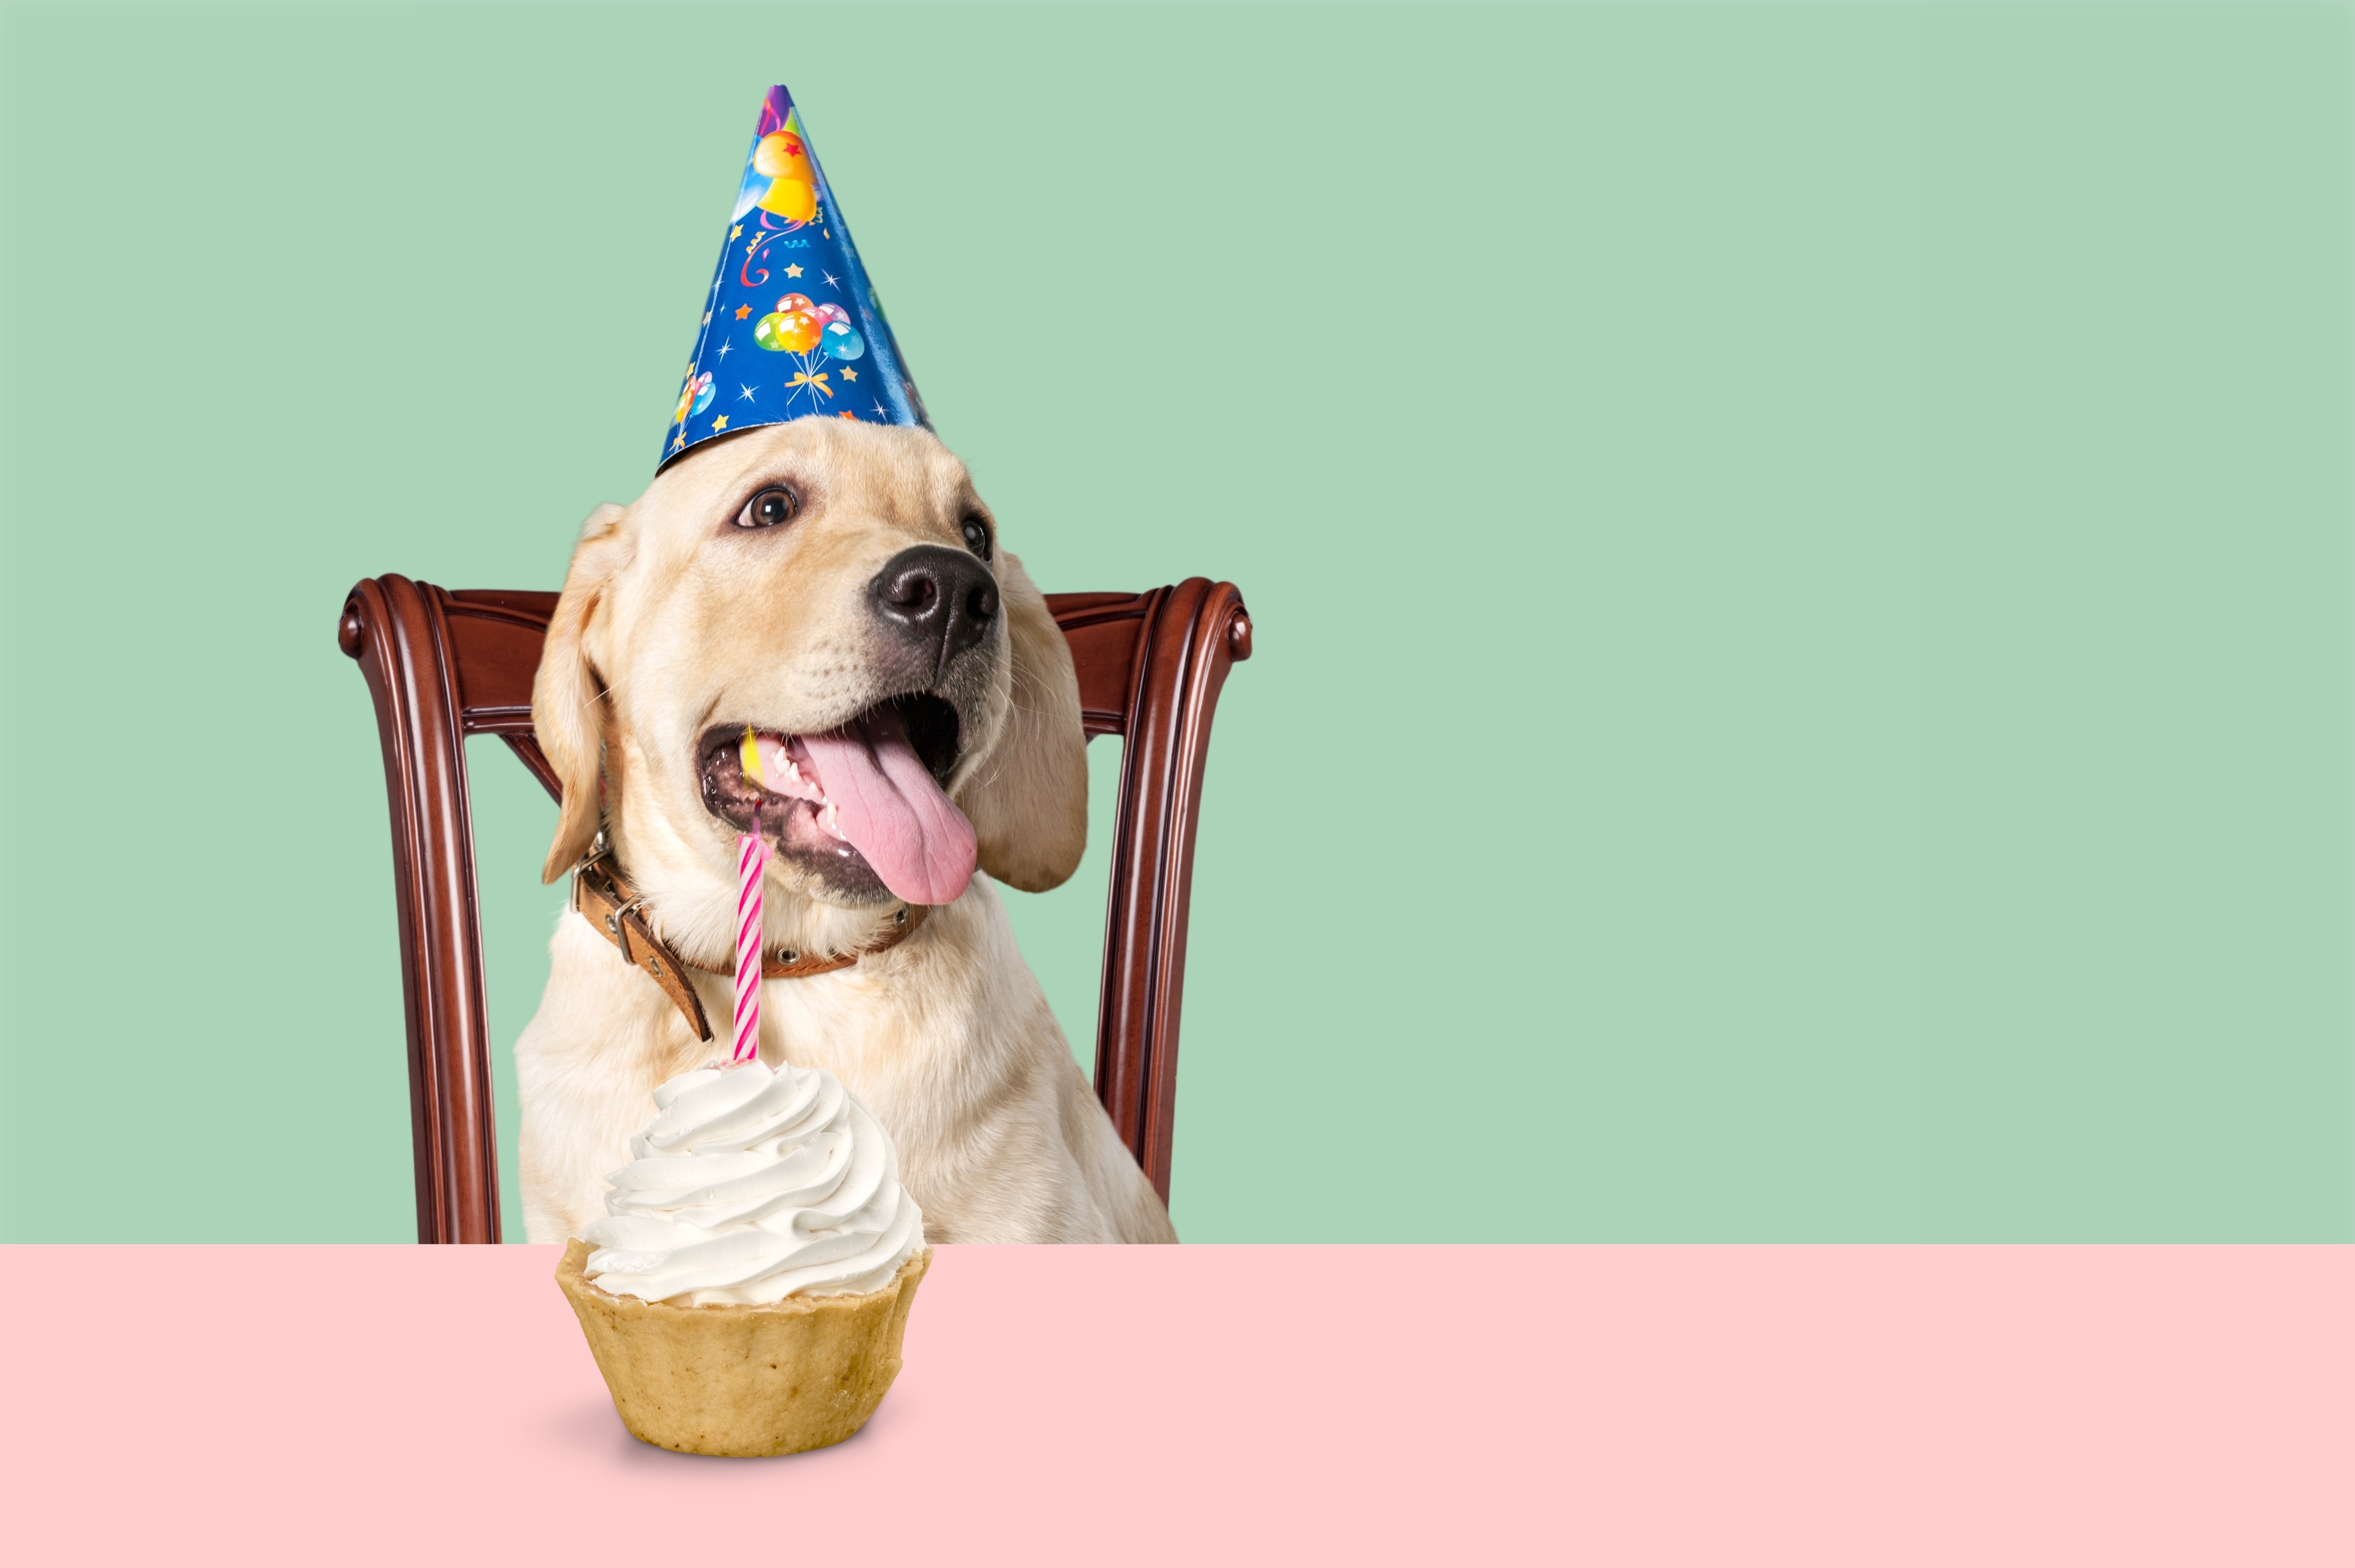 Примета заранее поздравлять с днем. День рождения собаки. Тортик для собаки. Торт с собакой. Собака в колпаке с днем рождения.